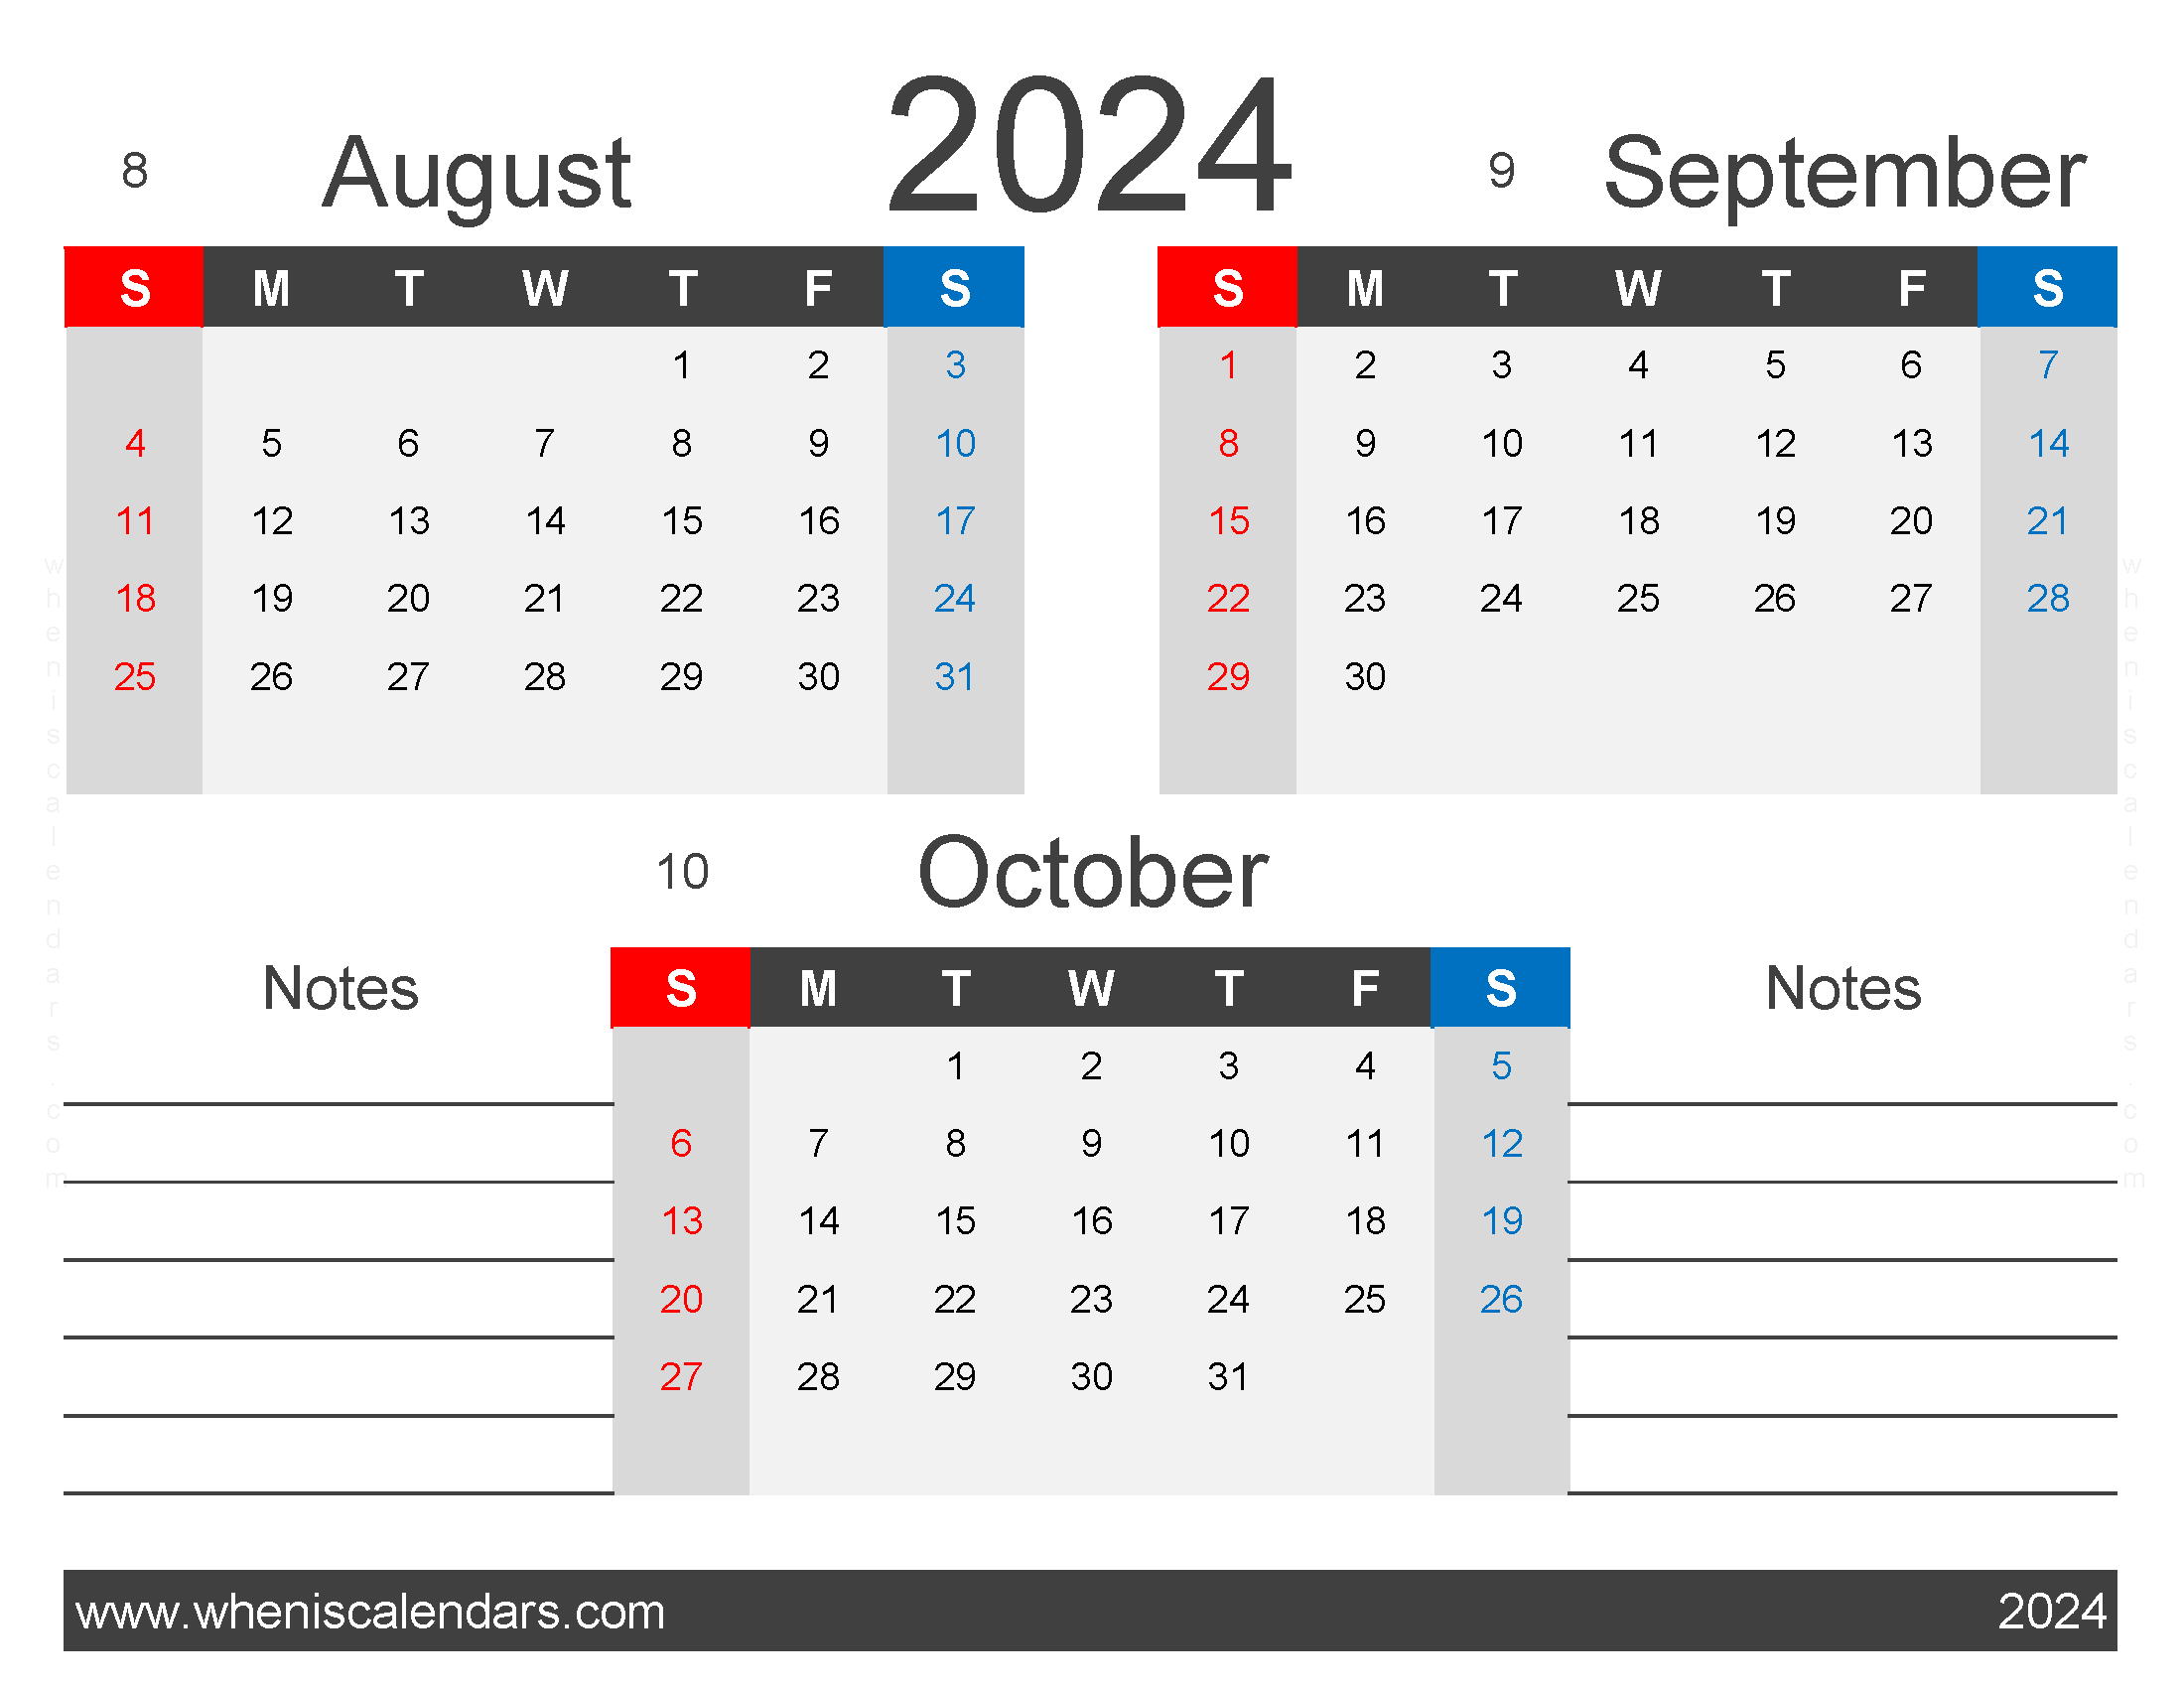 Download 2024 Calendar Aug Sept October ASO424